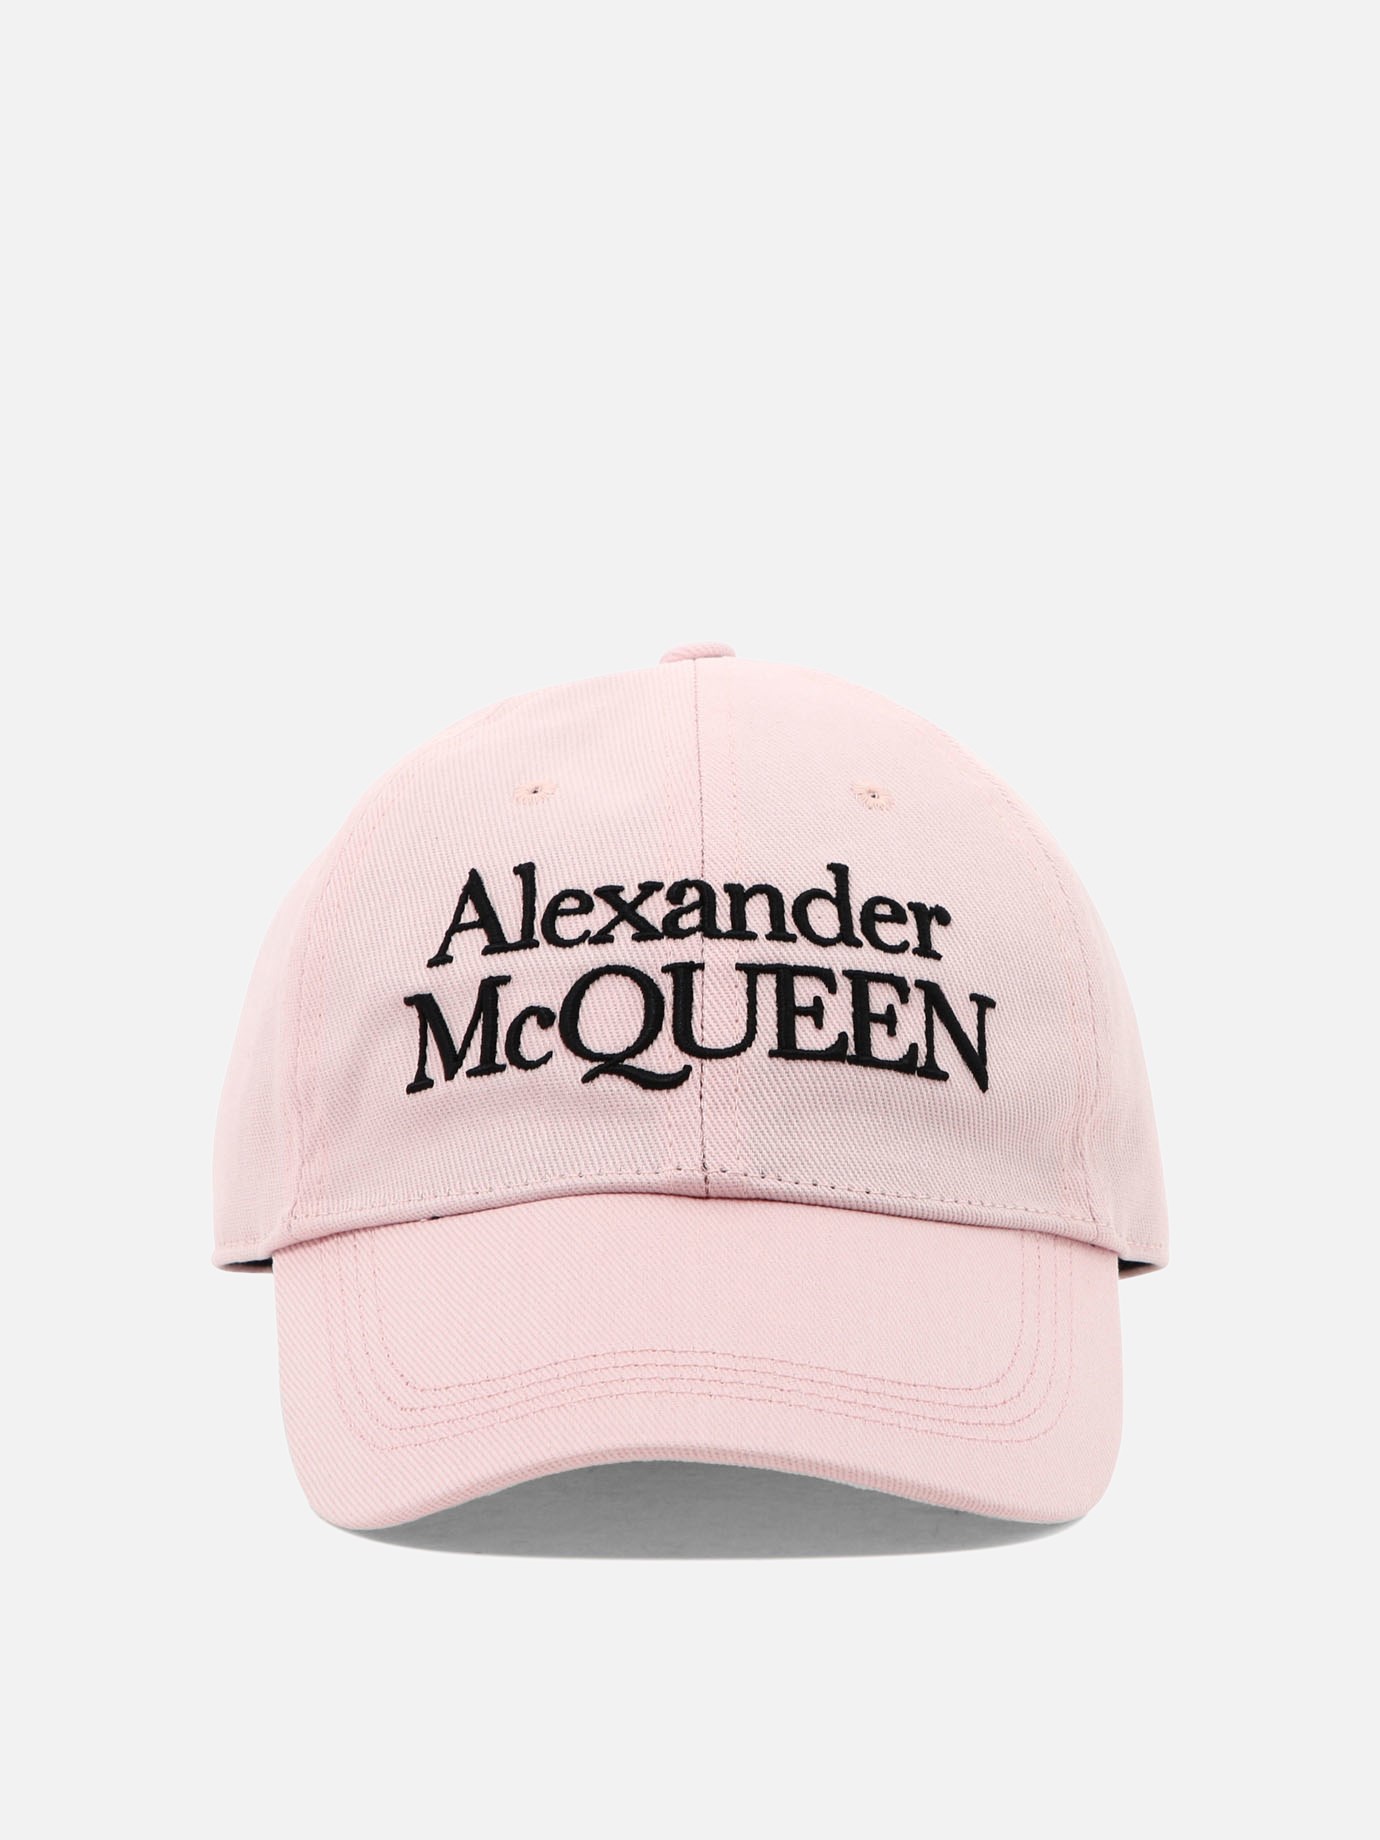  McQueen Signature  capby Alexander McQueen - 3